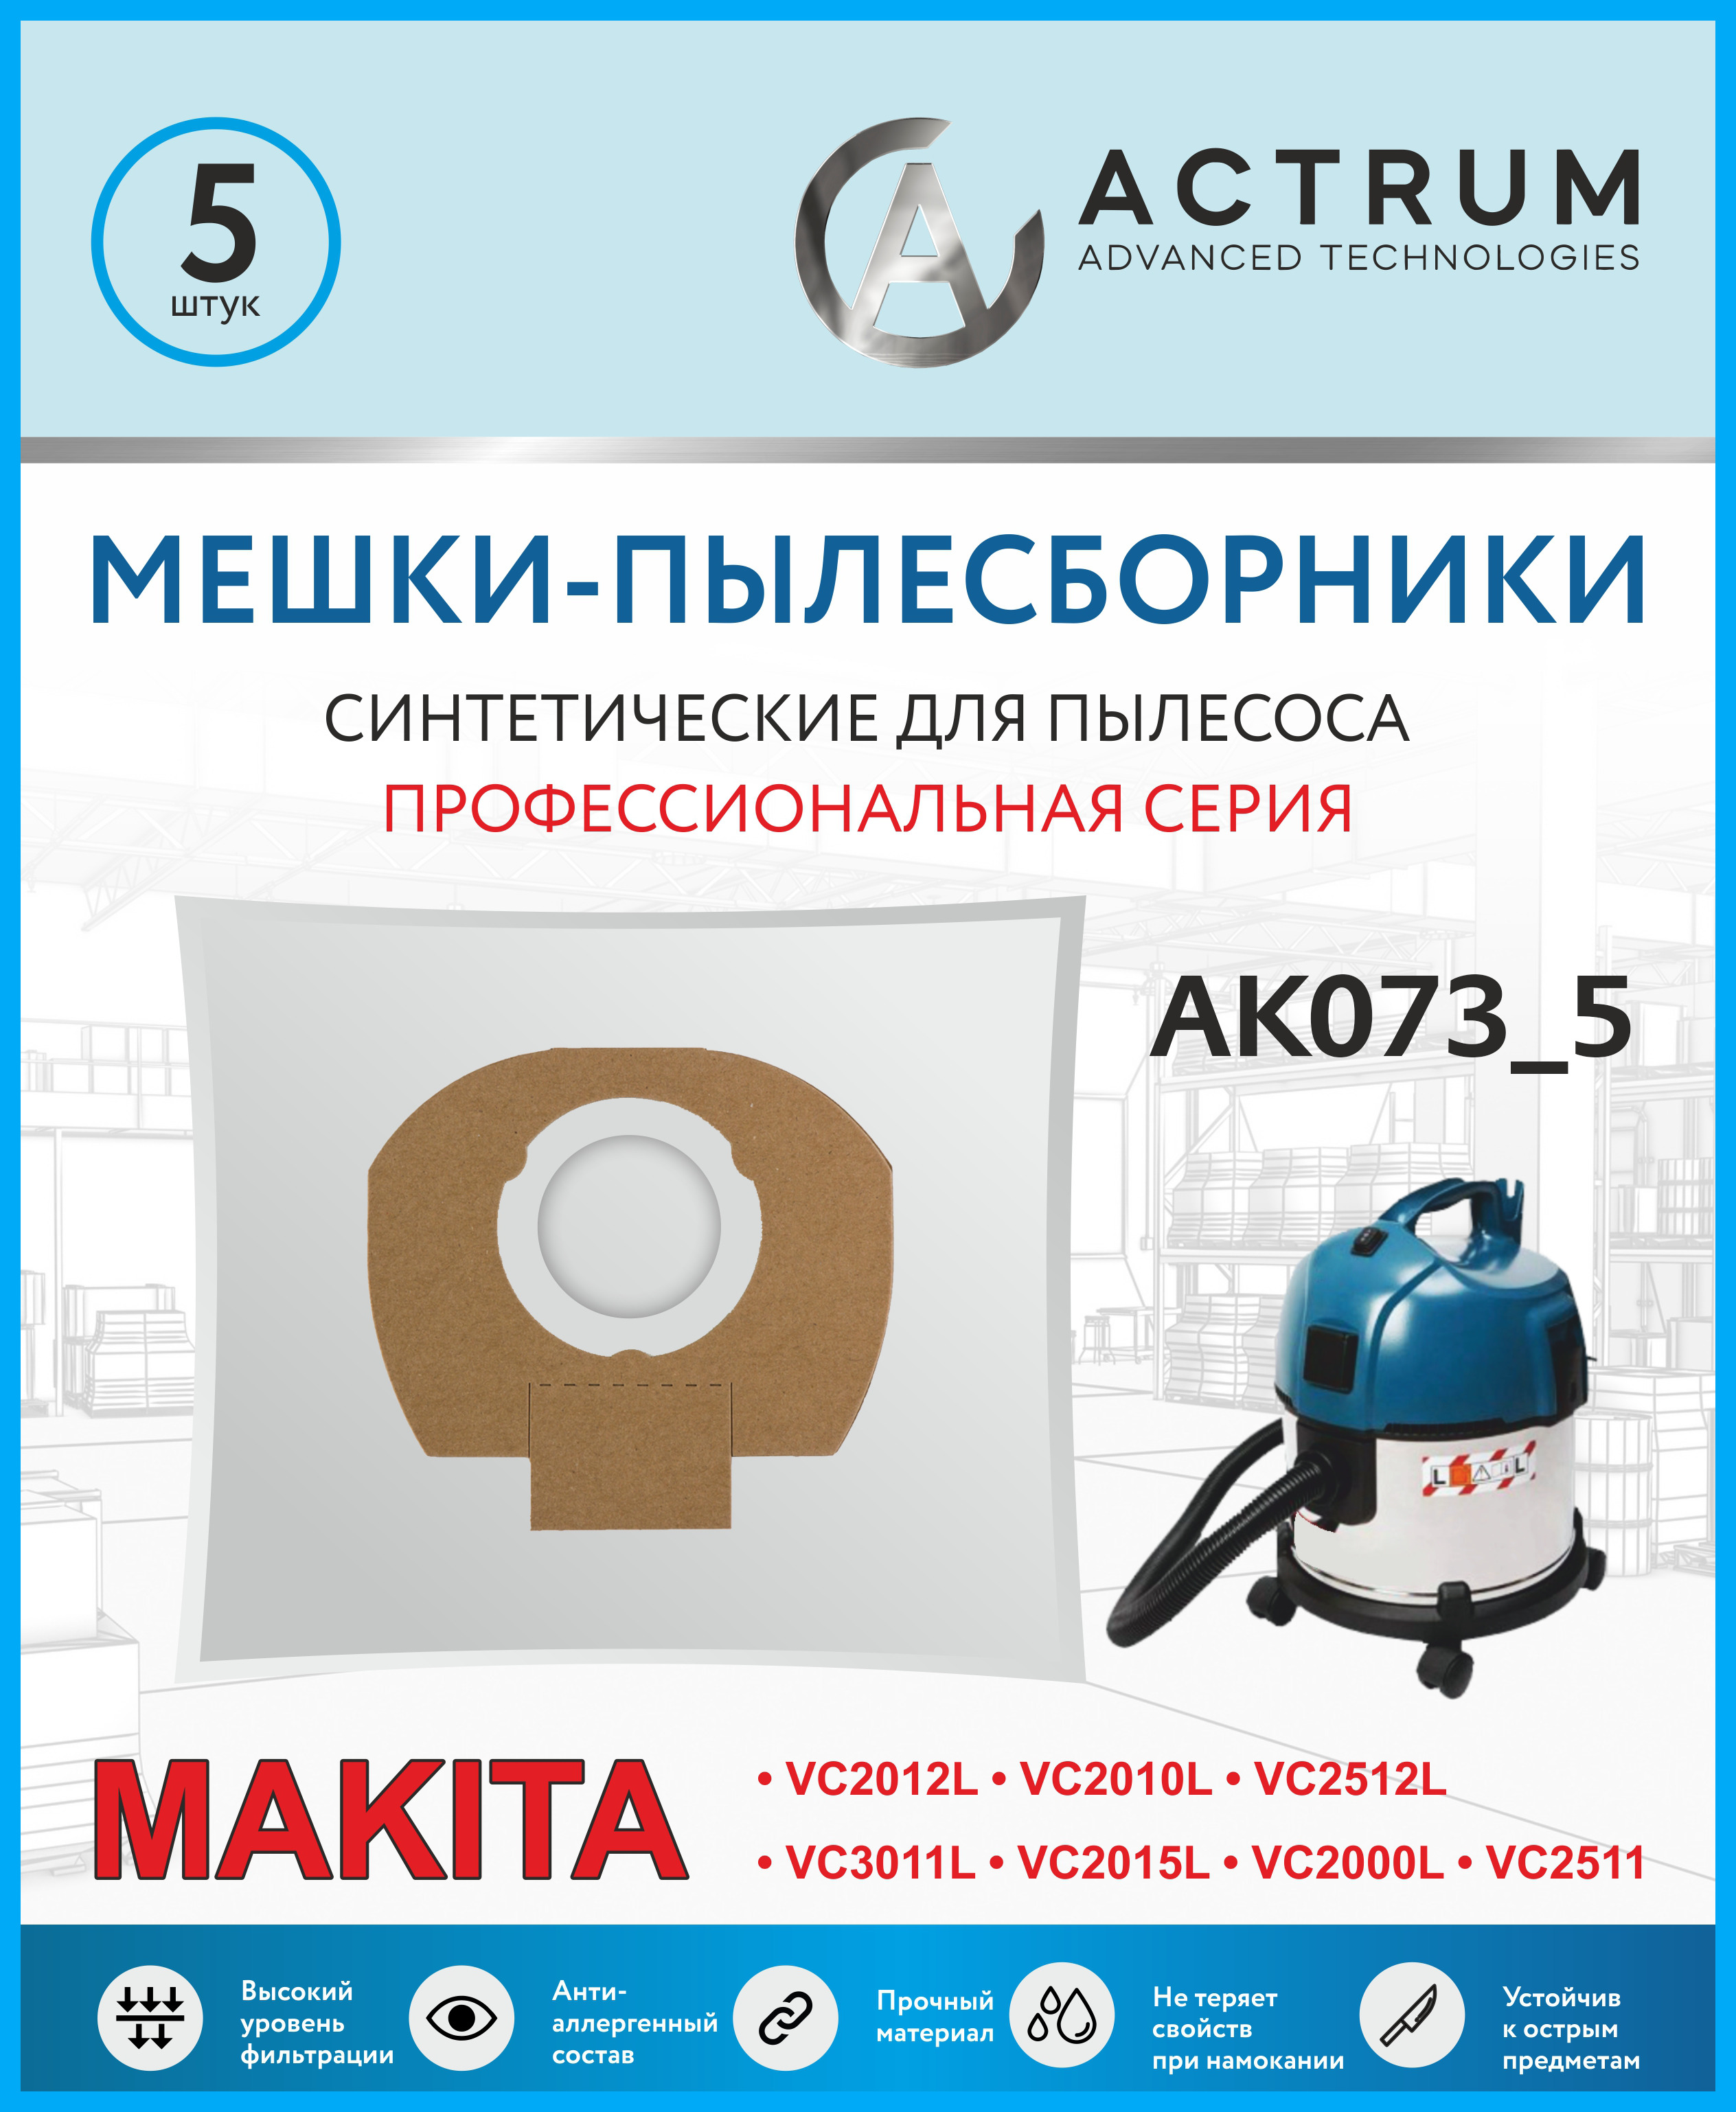 Пылесборники Actrum AK073_5 для промышленных пылесосов MAKITA, METABO, STIHL, AEG, HILTI